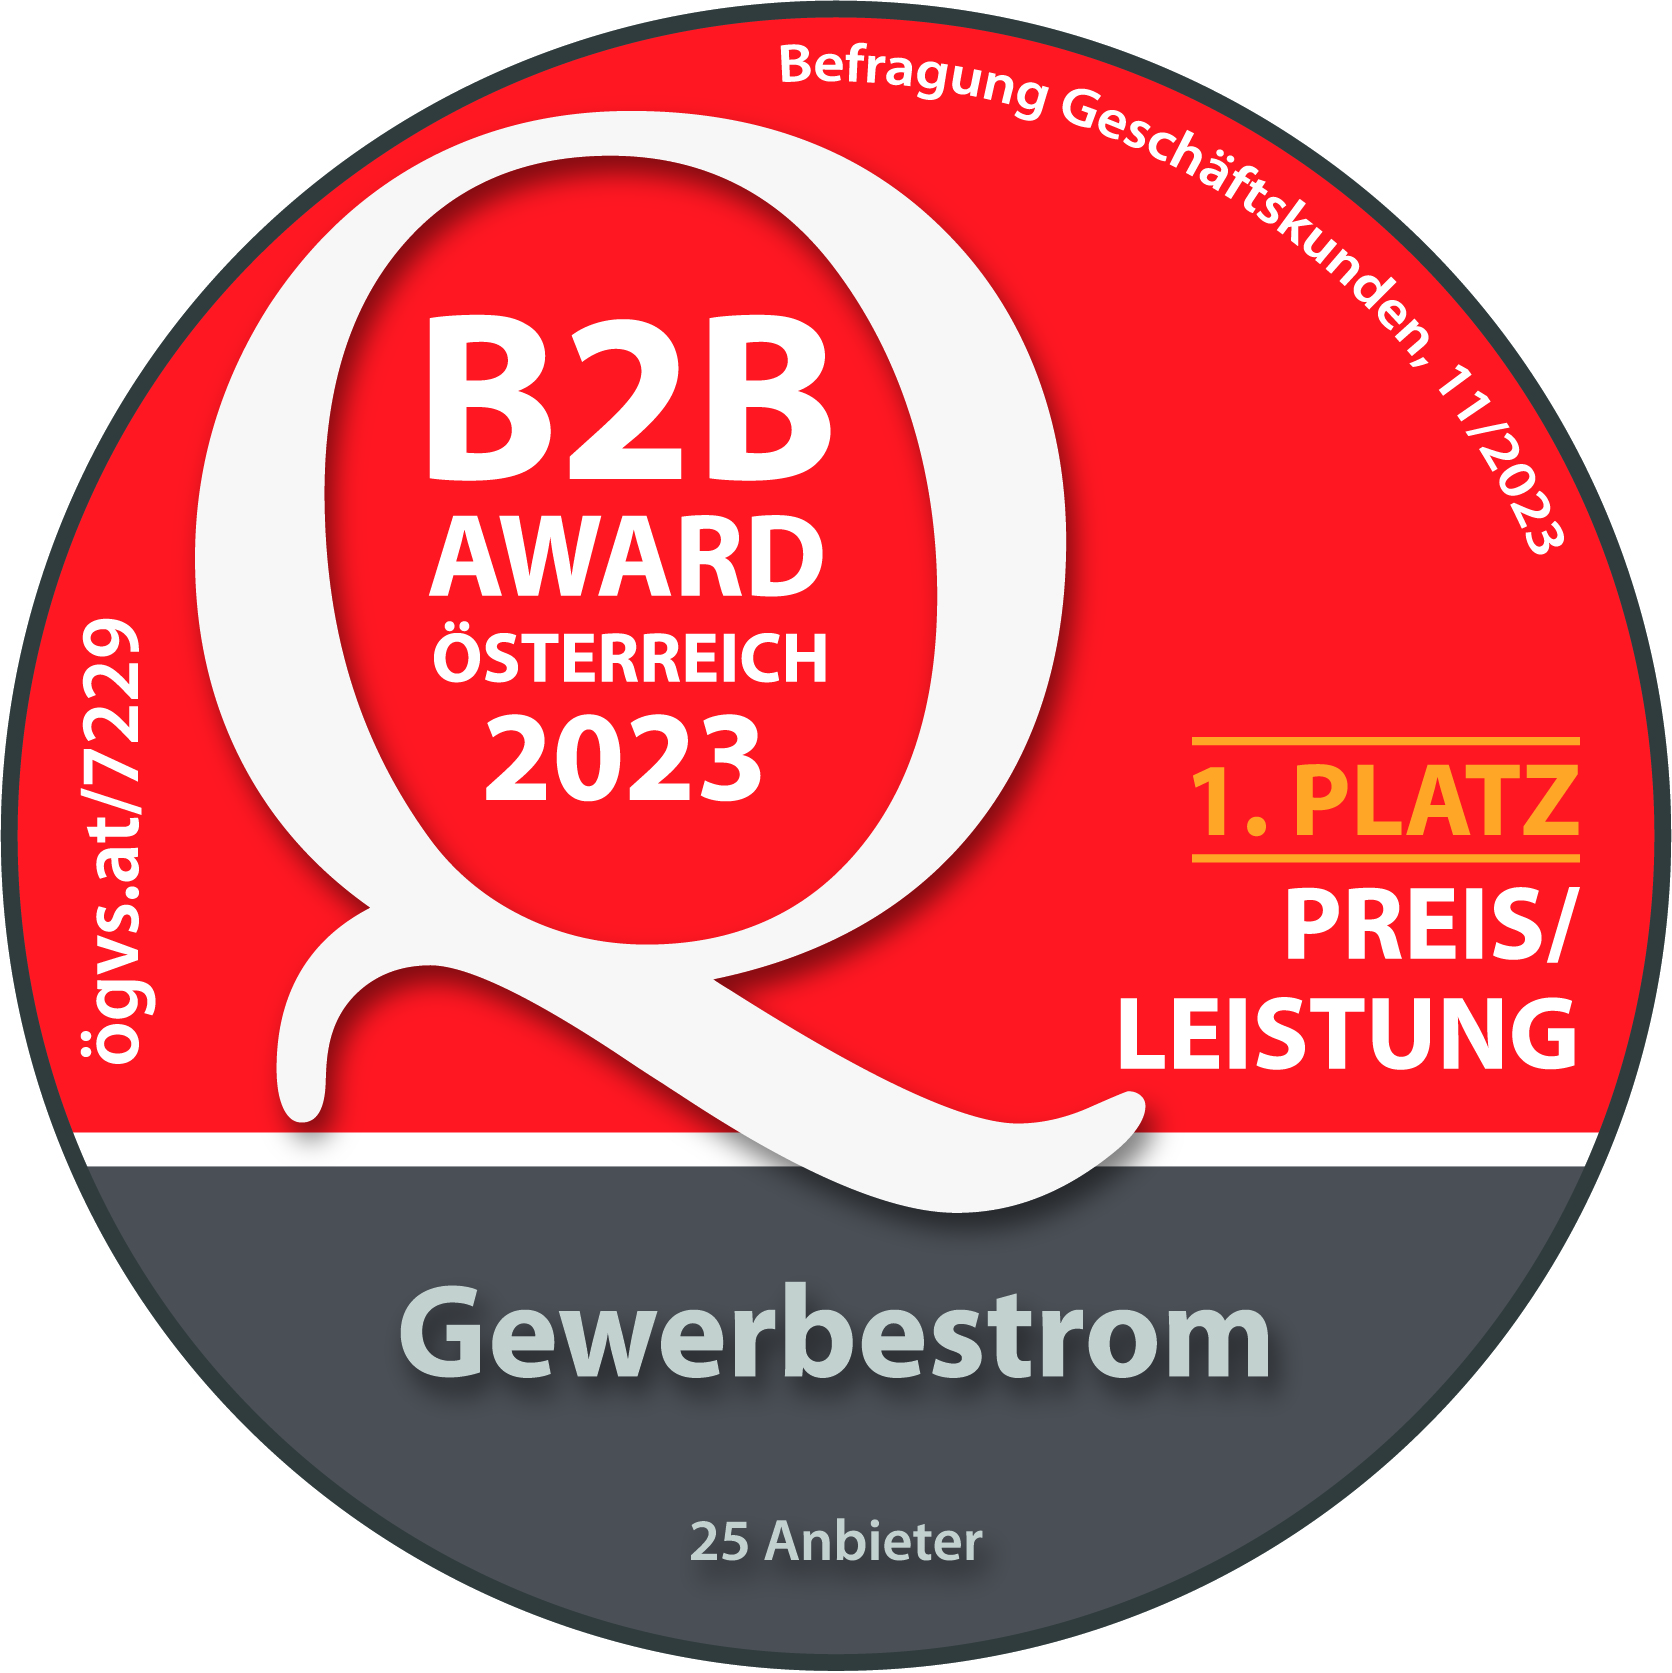 ÖGVS B2B Award Österreich. 1. Platz Preis/Leistung Gewerbestrom